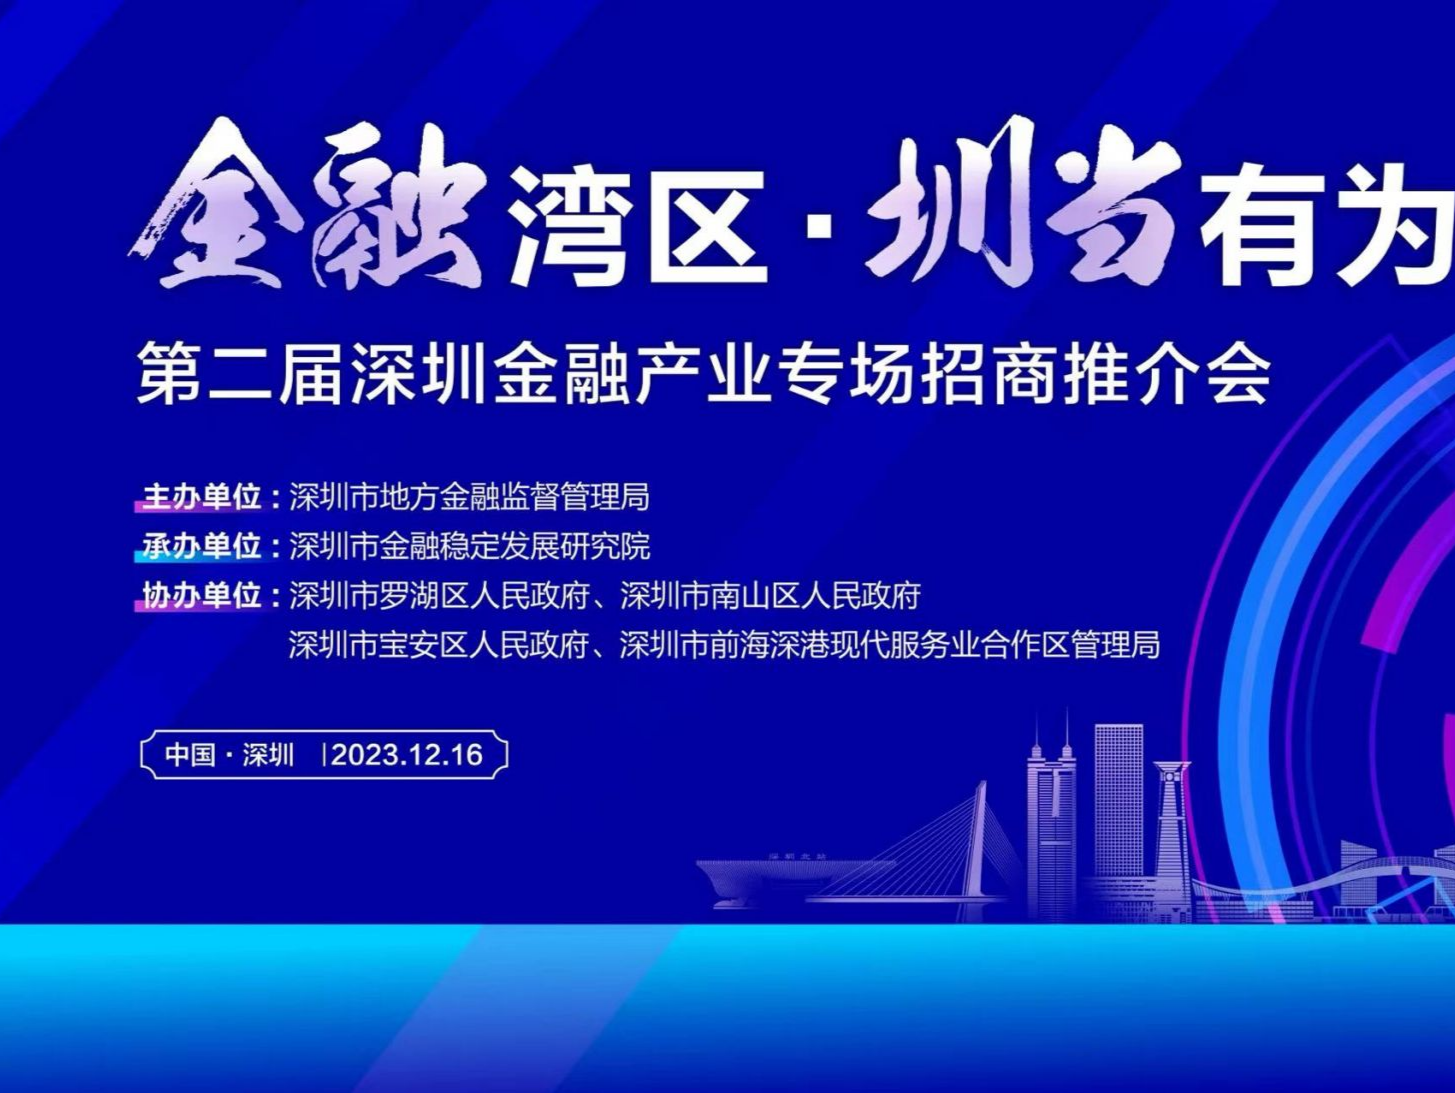 深圳将举办第二届金融产业专场招商推介会